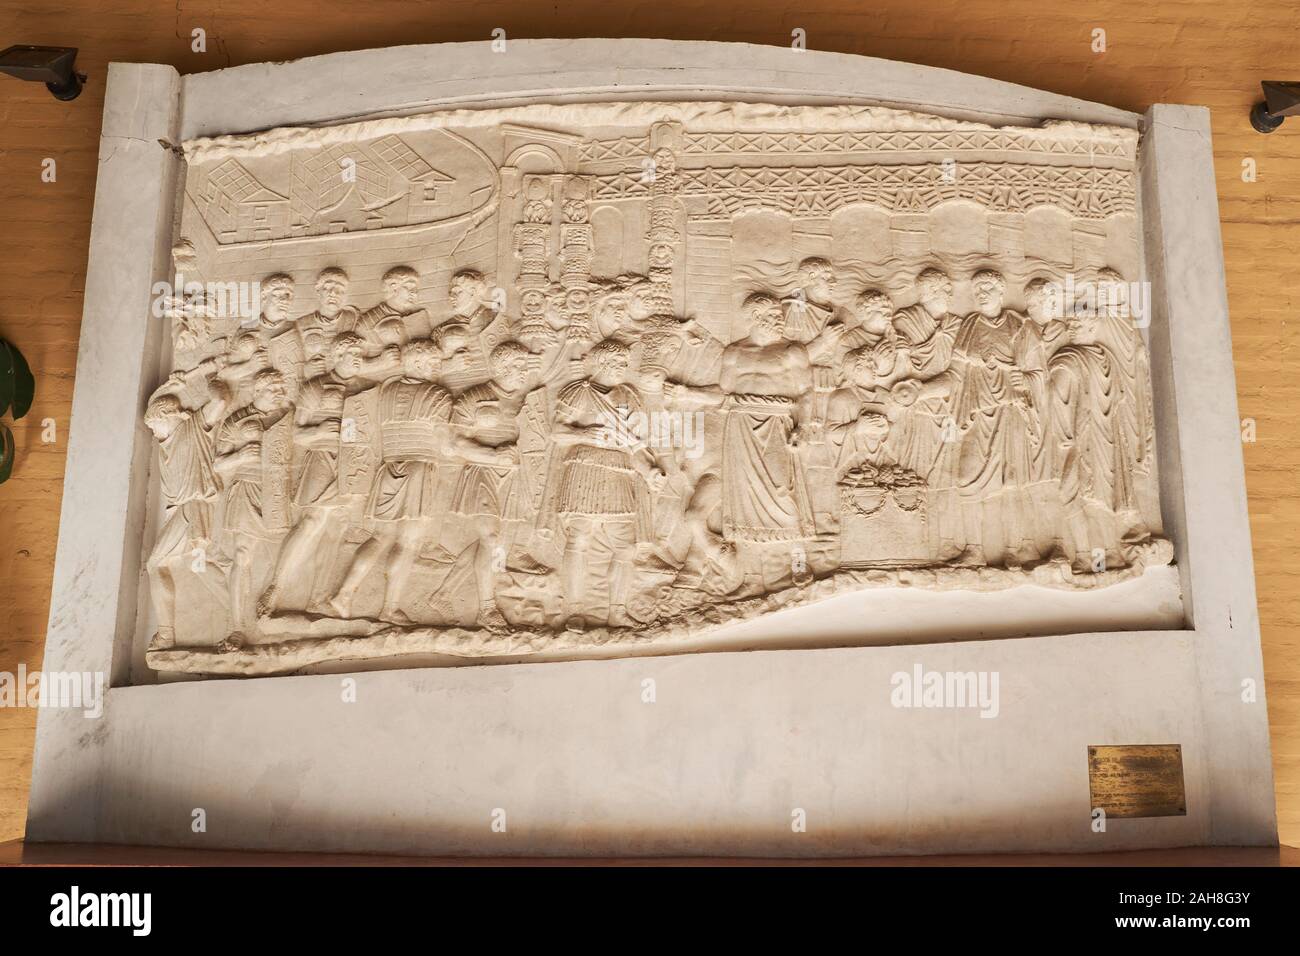 Sacrifice pour l'inauguration du pont sur le Danube. Bas-relief de la colonne Trajane de Rome. Italica romain. Séville, Espagne. Banque D'Images